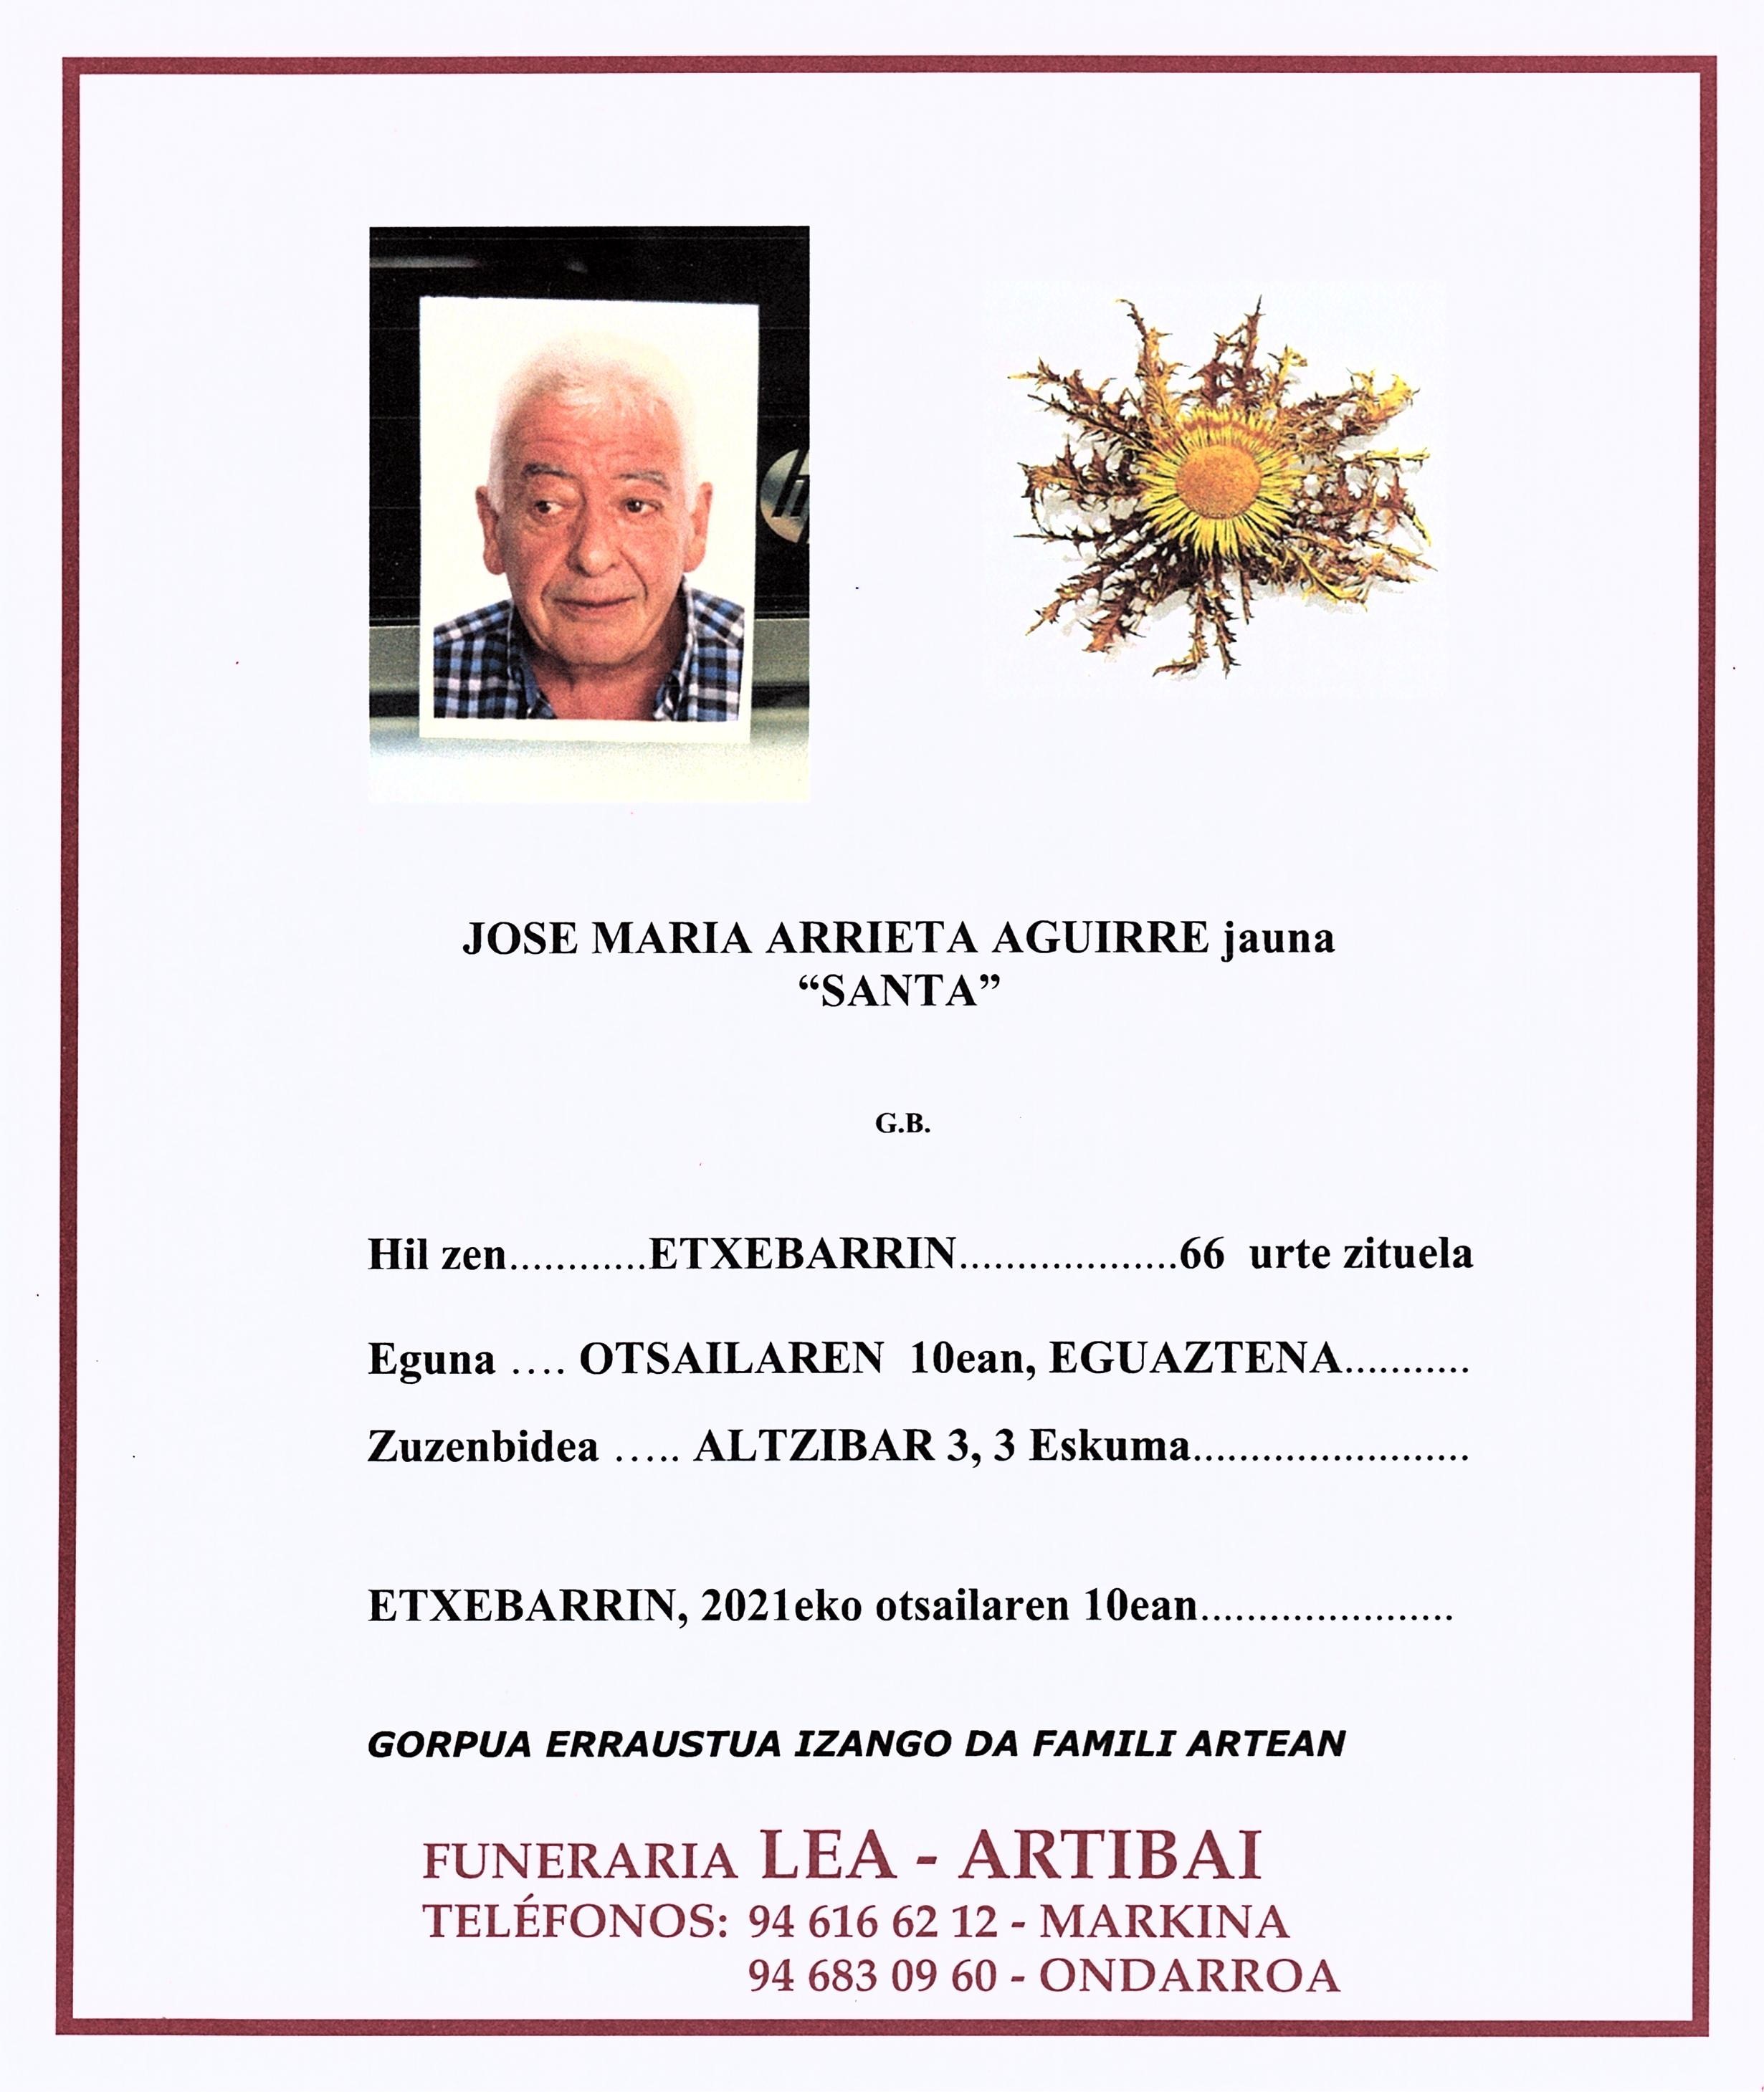 Jose Maria Arrieta